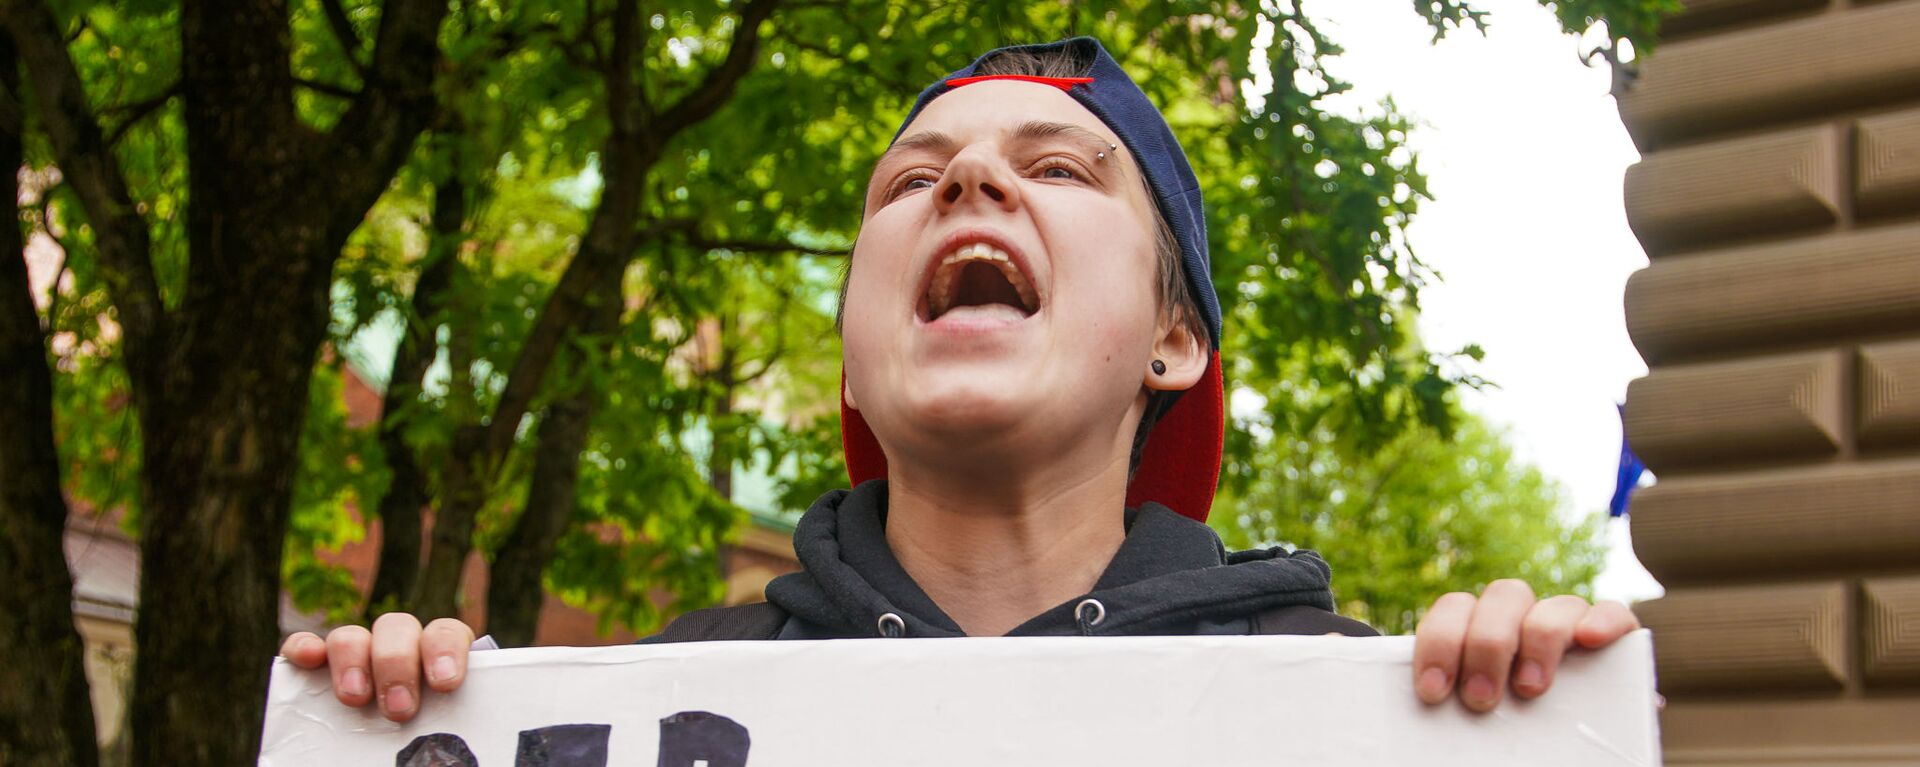  Пикет молодежной организации Протест за права представителей ЛГБТ - Sputnik Latvija, 1920, 17.03.2021